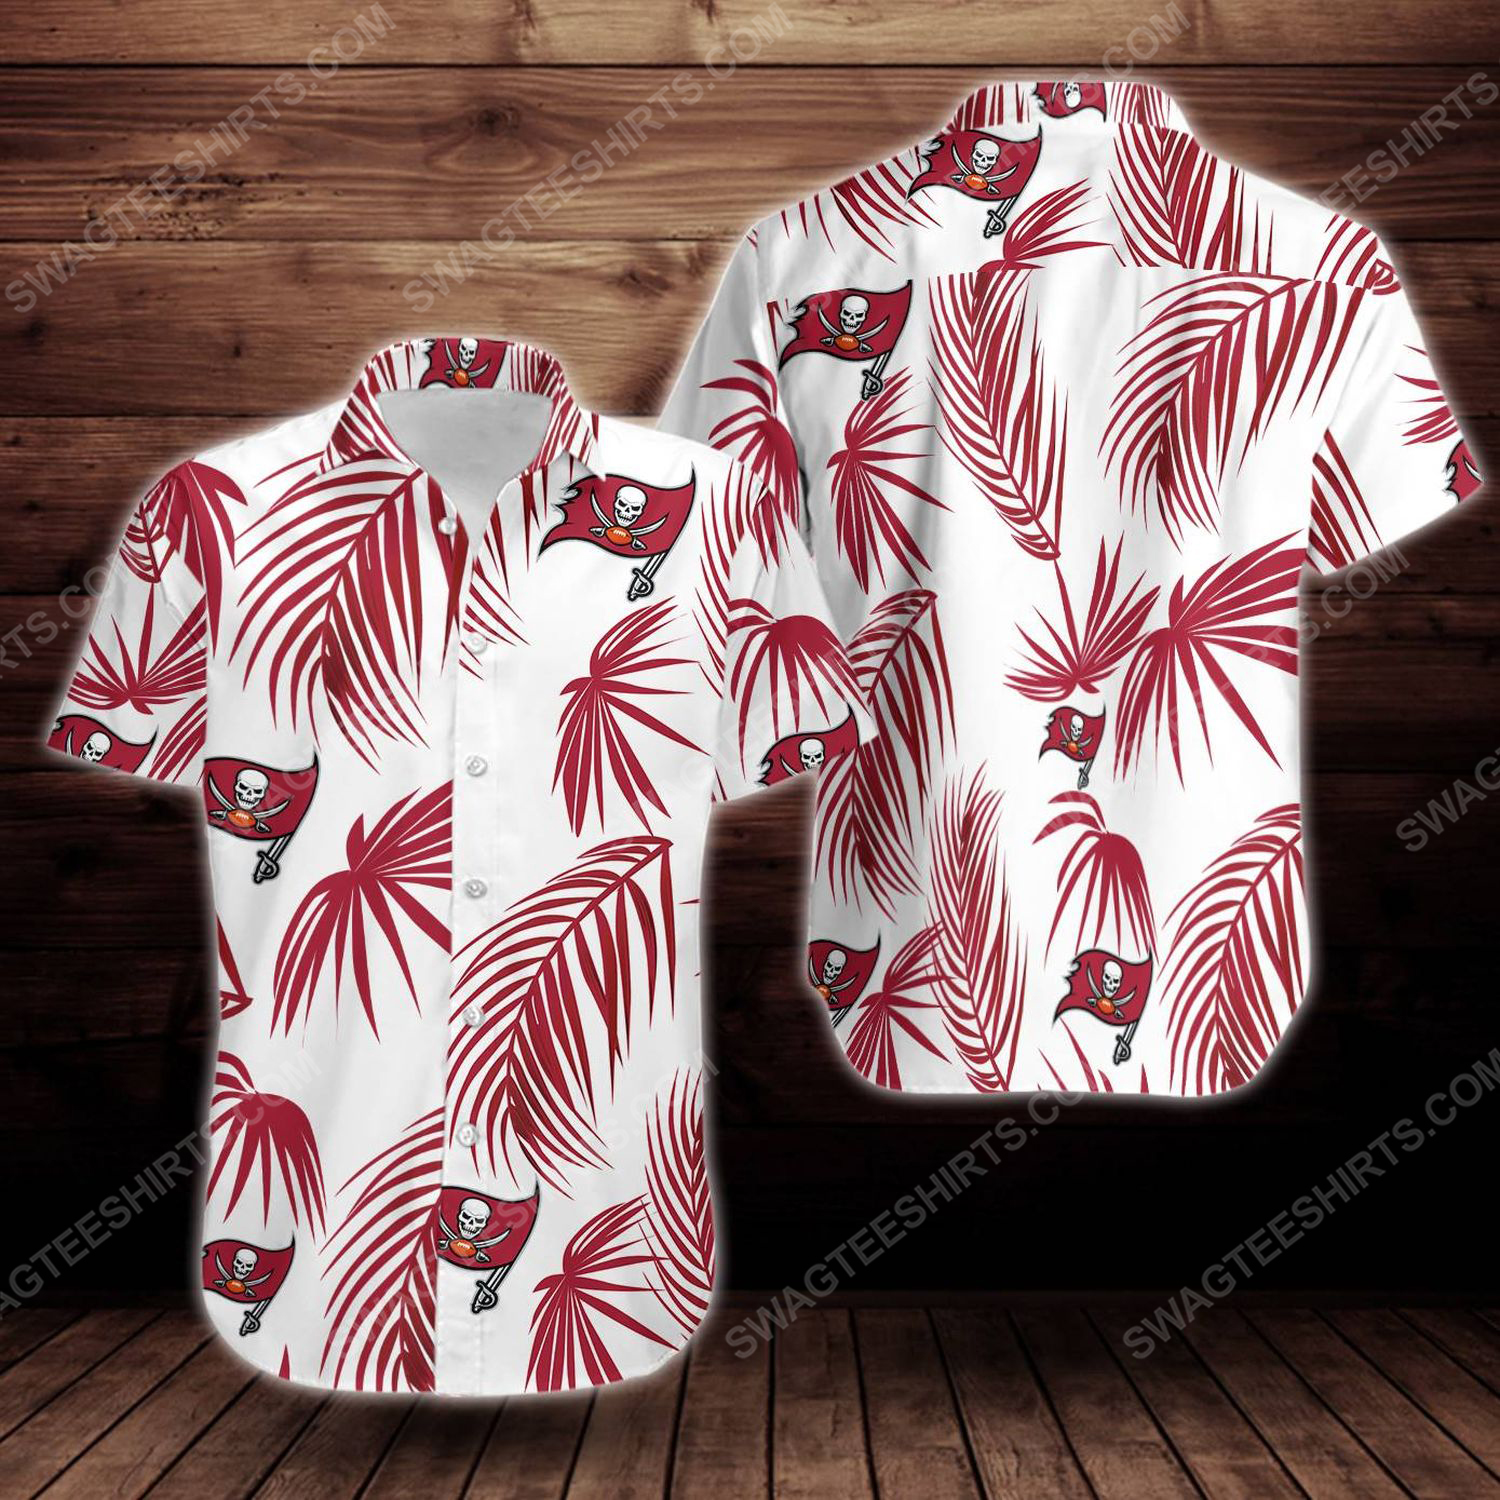 [special edition] Tropical summer tampa bay buccaneers short sleeve hawaiian shirt – maria